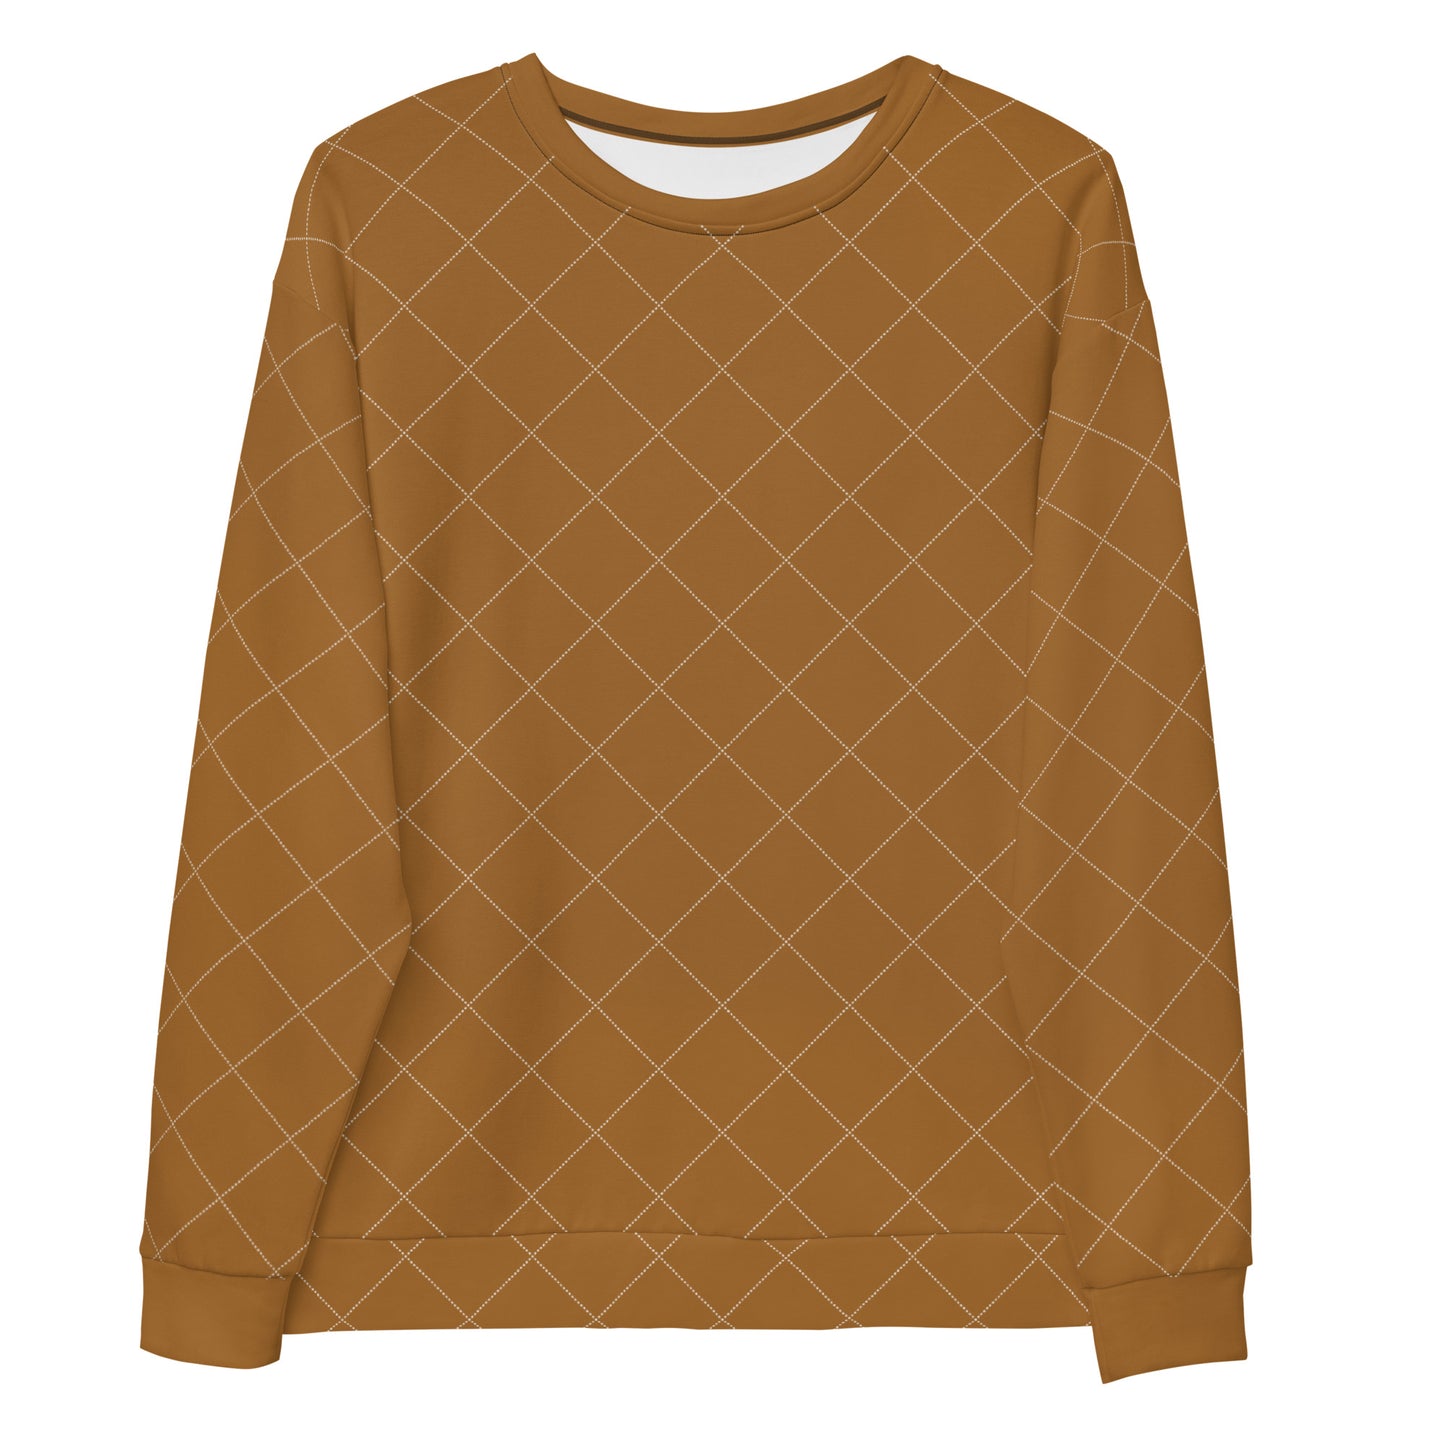 Caramel - Sustainably Made Sweatshirt